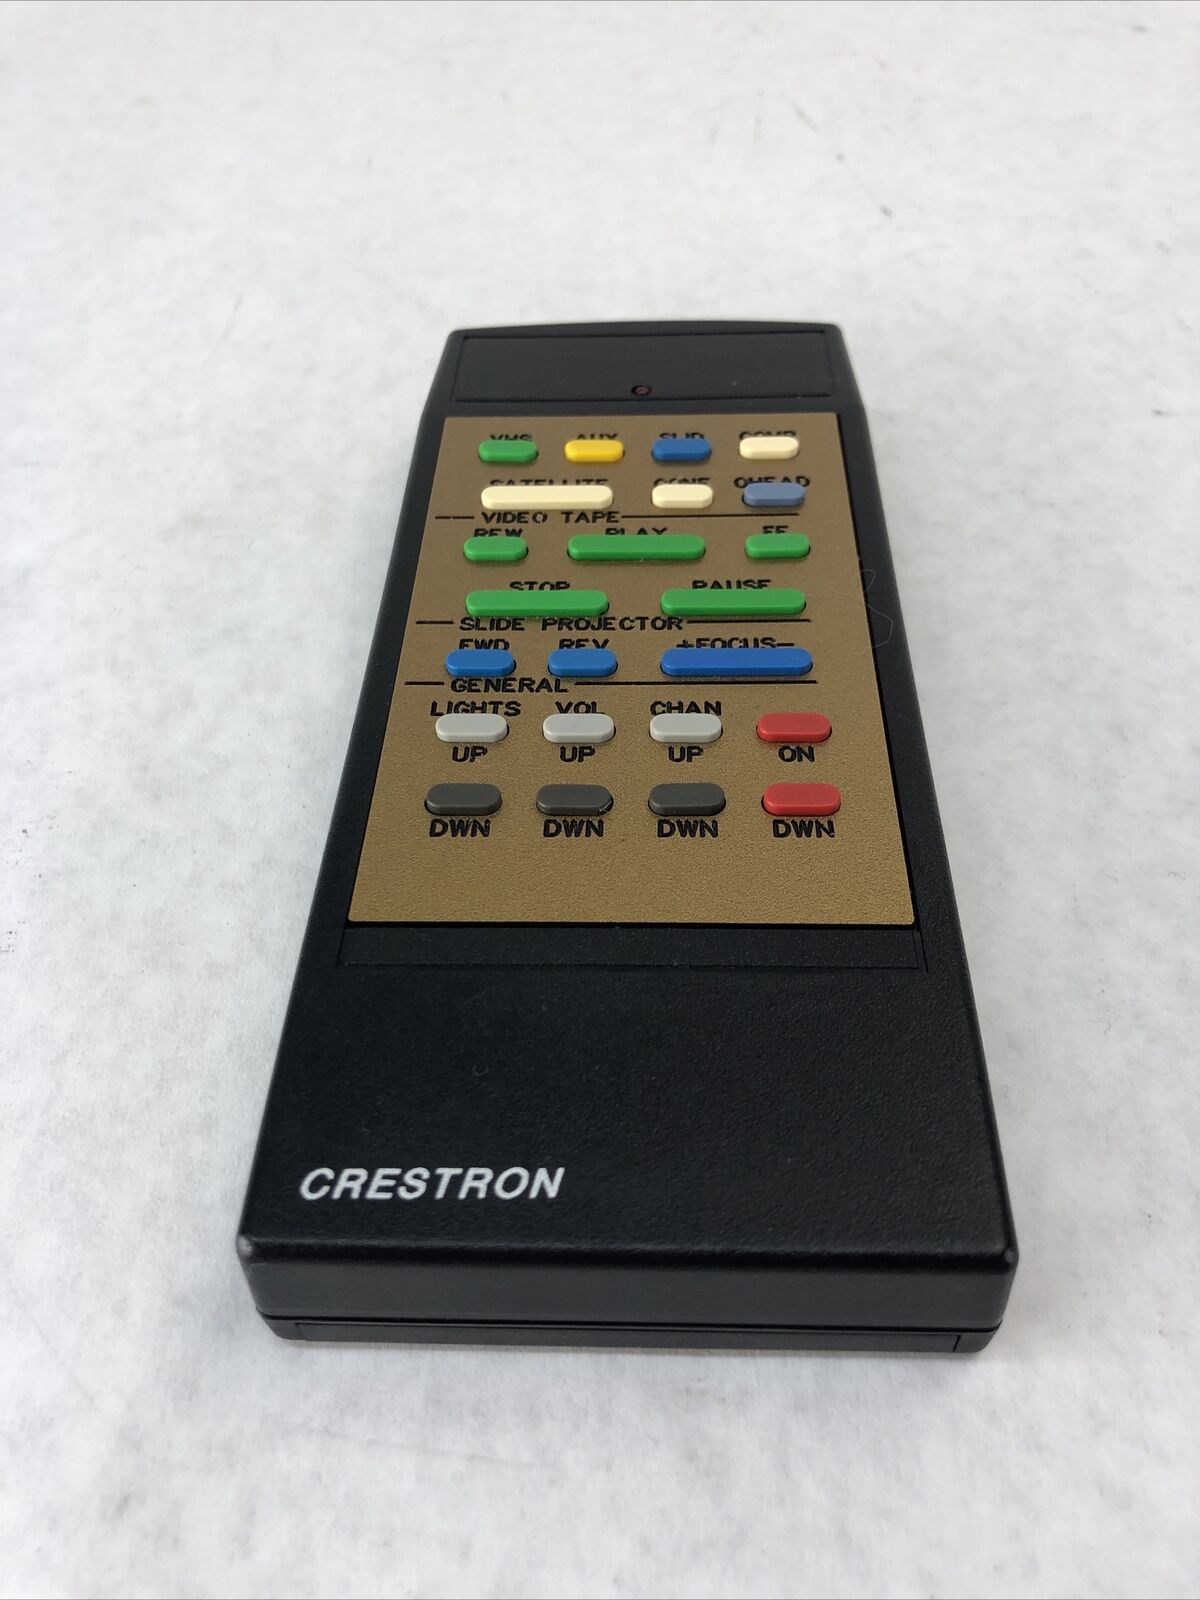 Crestron 56129 Vintage Remote Control - Black